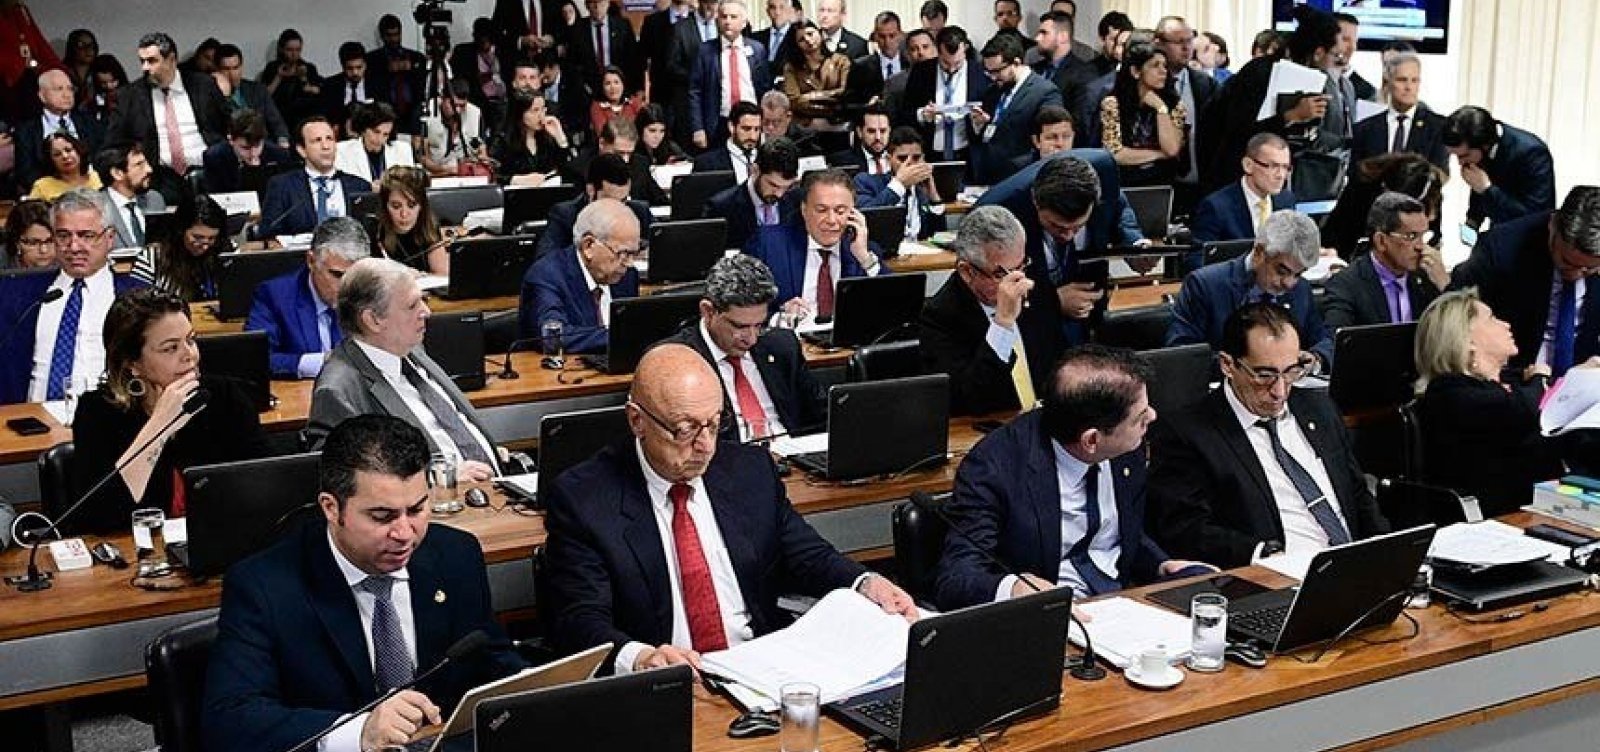 Adiada votação sobre perda de mandato para condenados pela Ficha Limpa em comissão do Senado